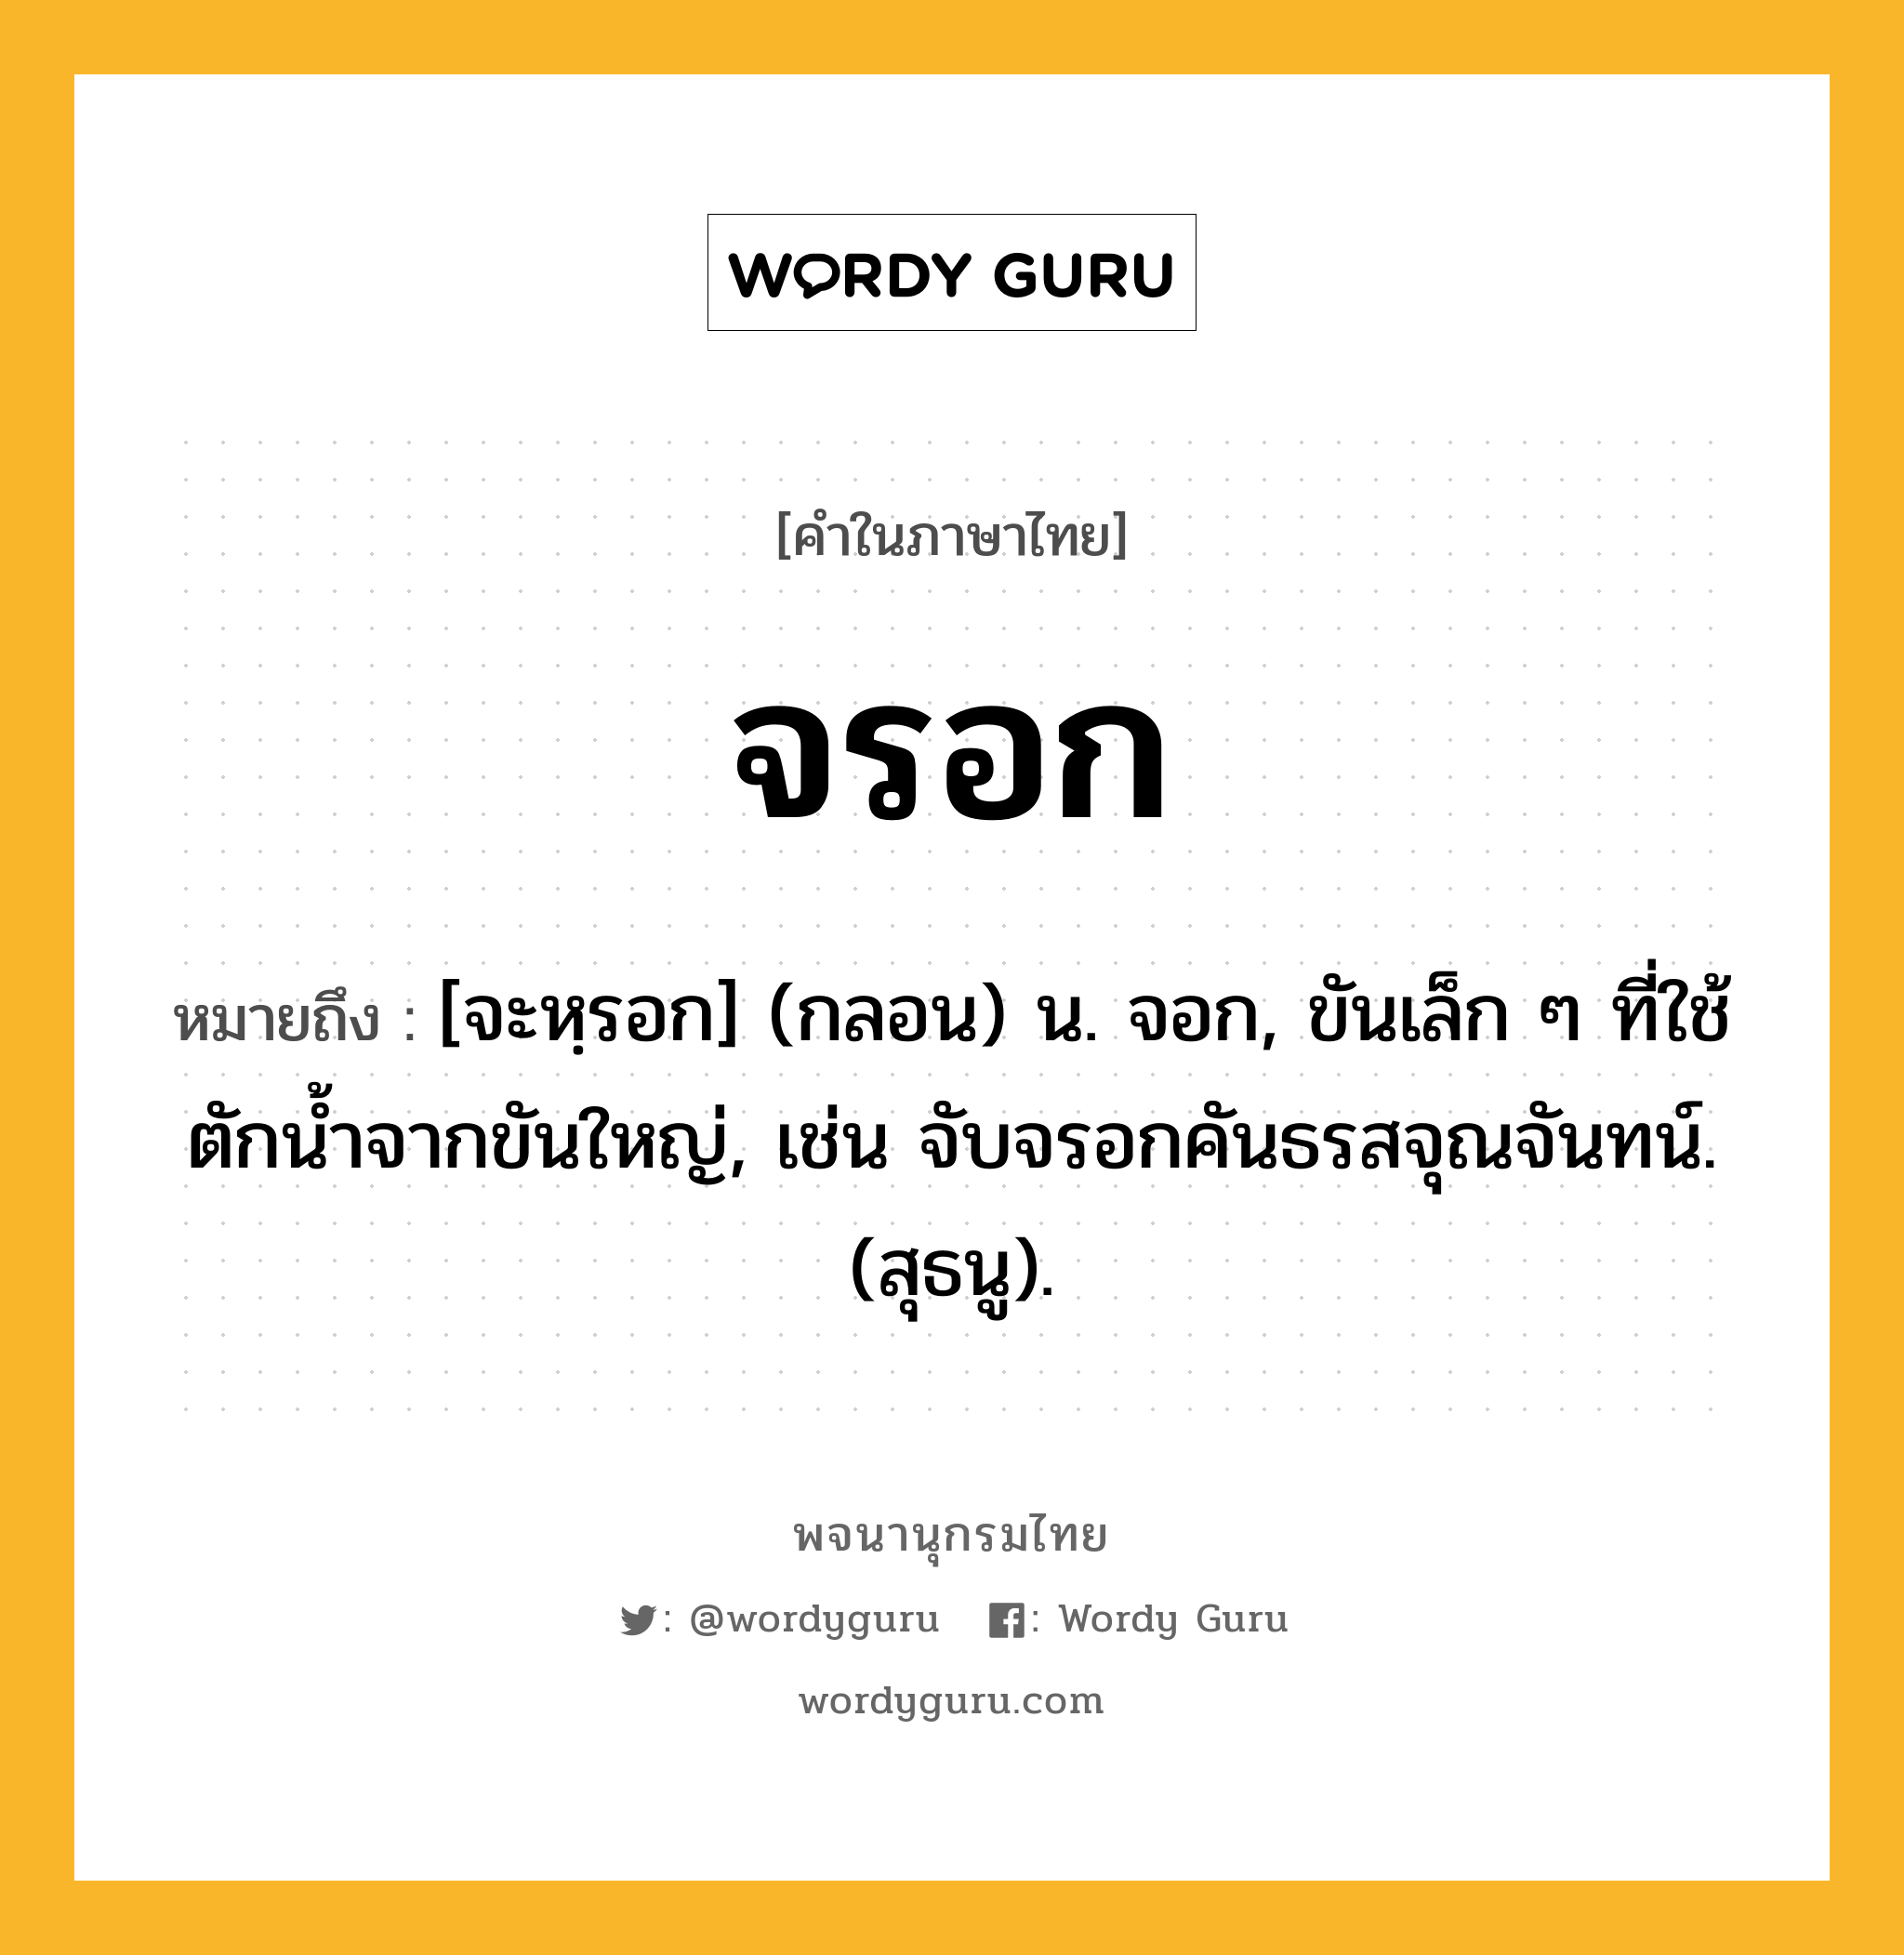 จรอก ความหมาย หมายถึงอะไร?, คำในภาษาไทย จรอก หมายถึง [จะหฺรอก] (กลอน) น. จอก, ขันเล็ก ๆ ที่ใช้ตักนํ้าจากขันใหญ่, เช่น จับจรอกคันธรสจุณจันทน์. (สุธนู).